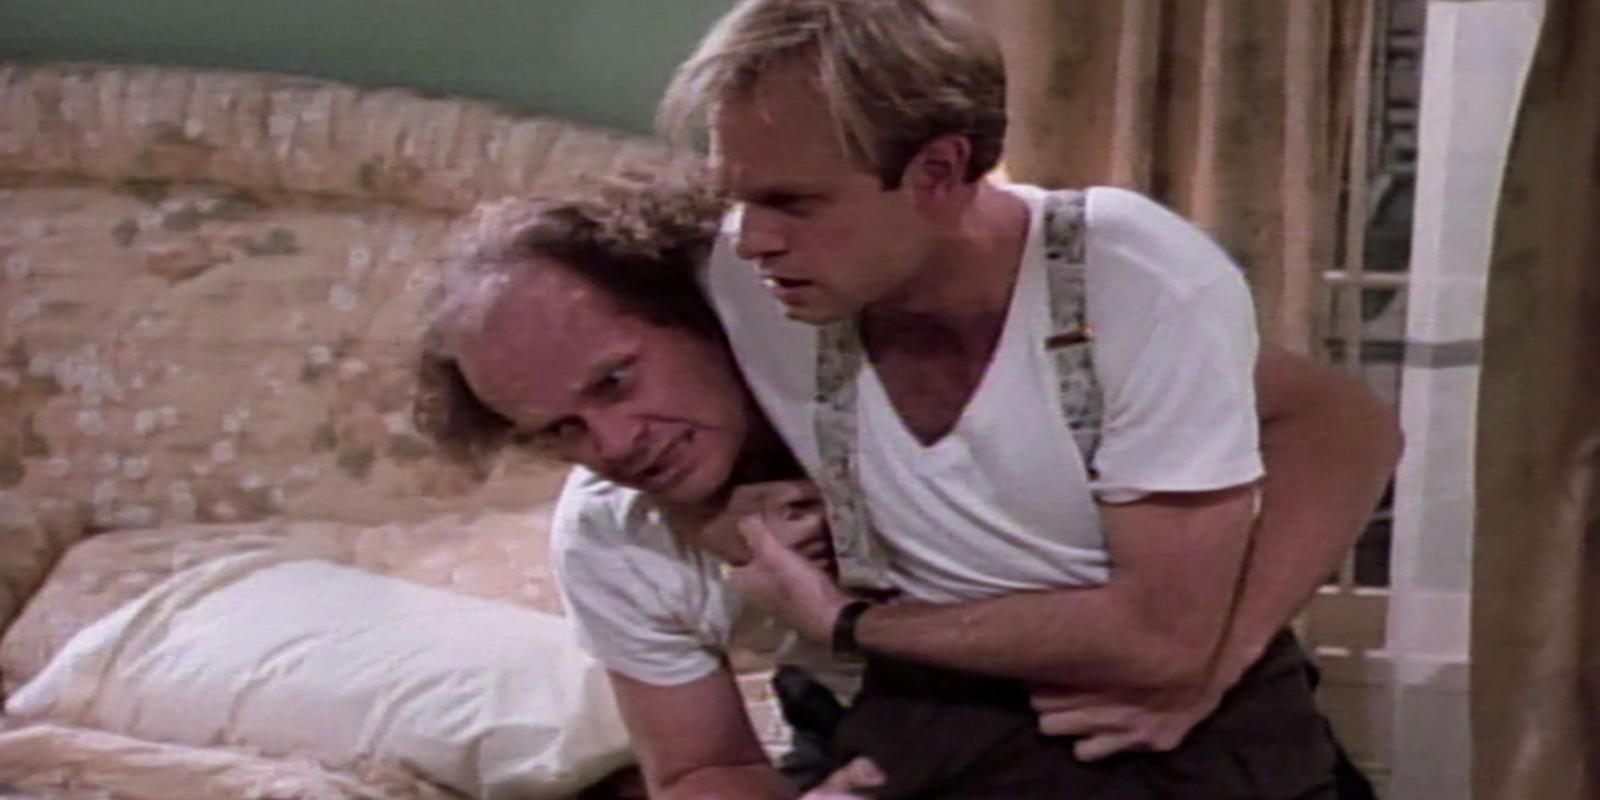 Frasier and Niles Crane wrestle in Author Author episode of Frasier